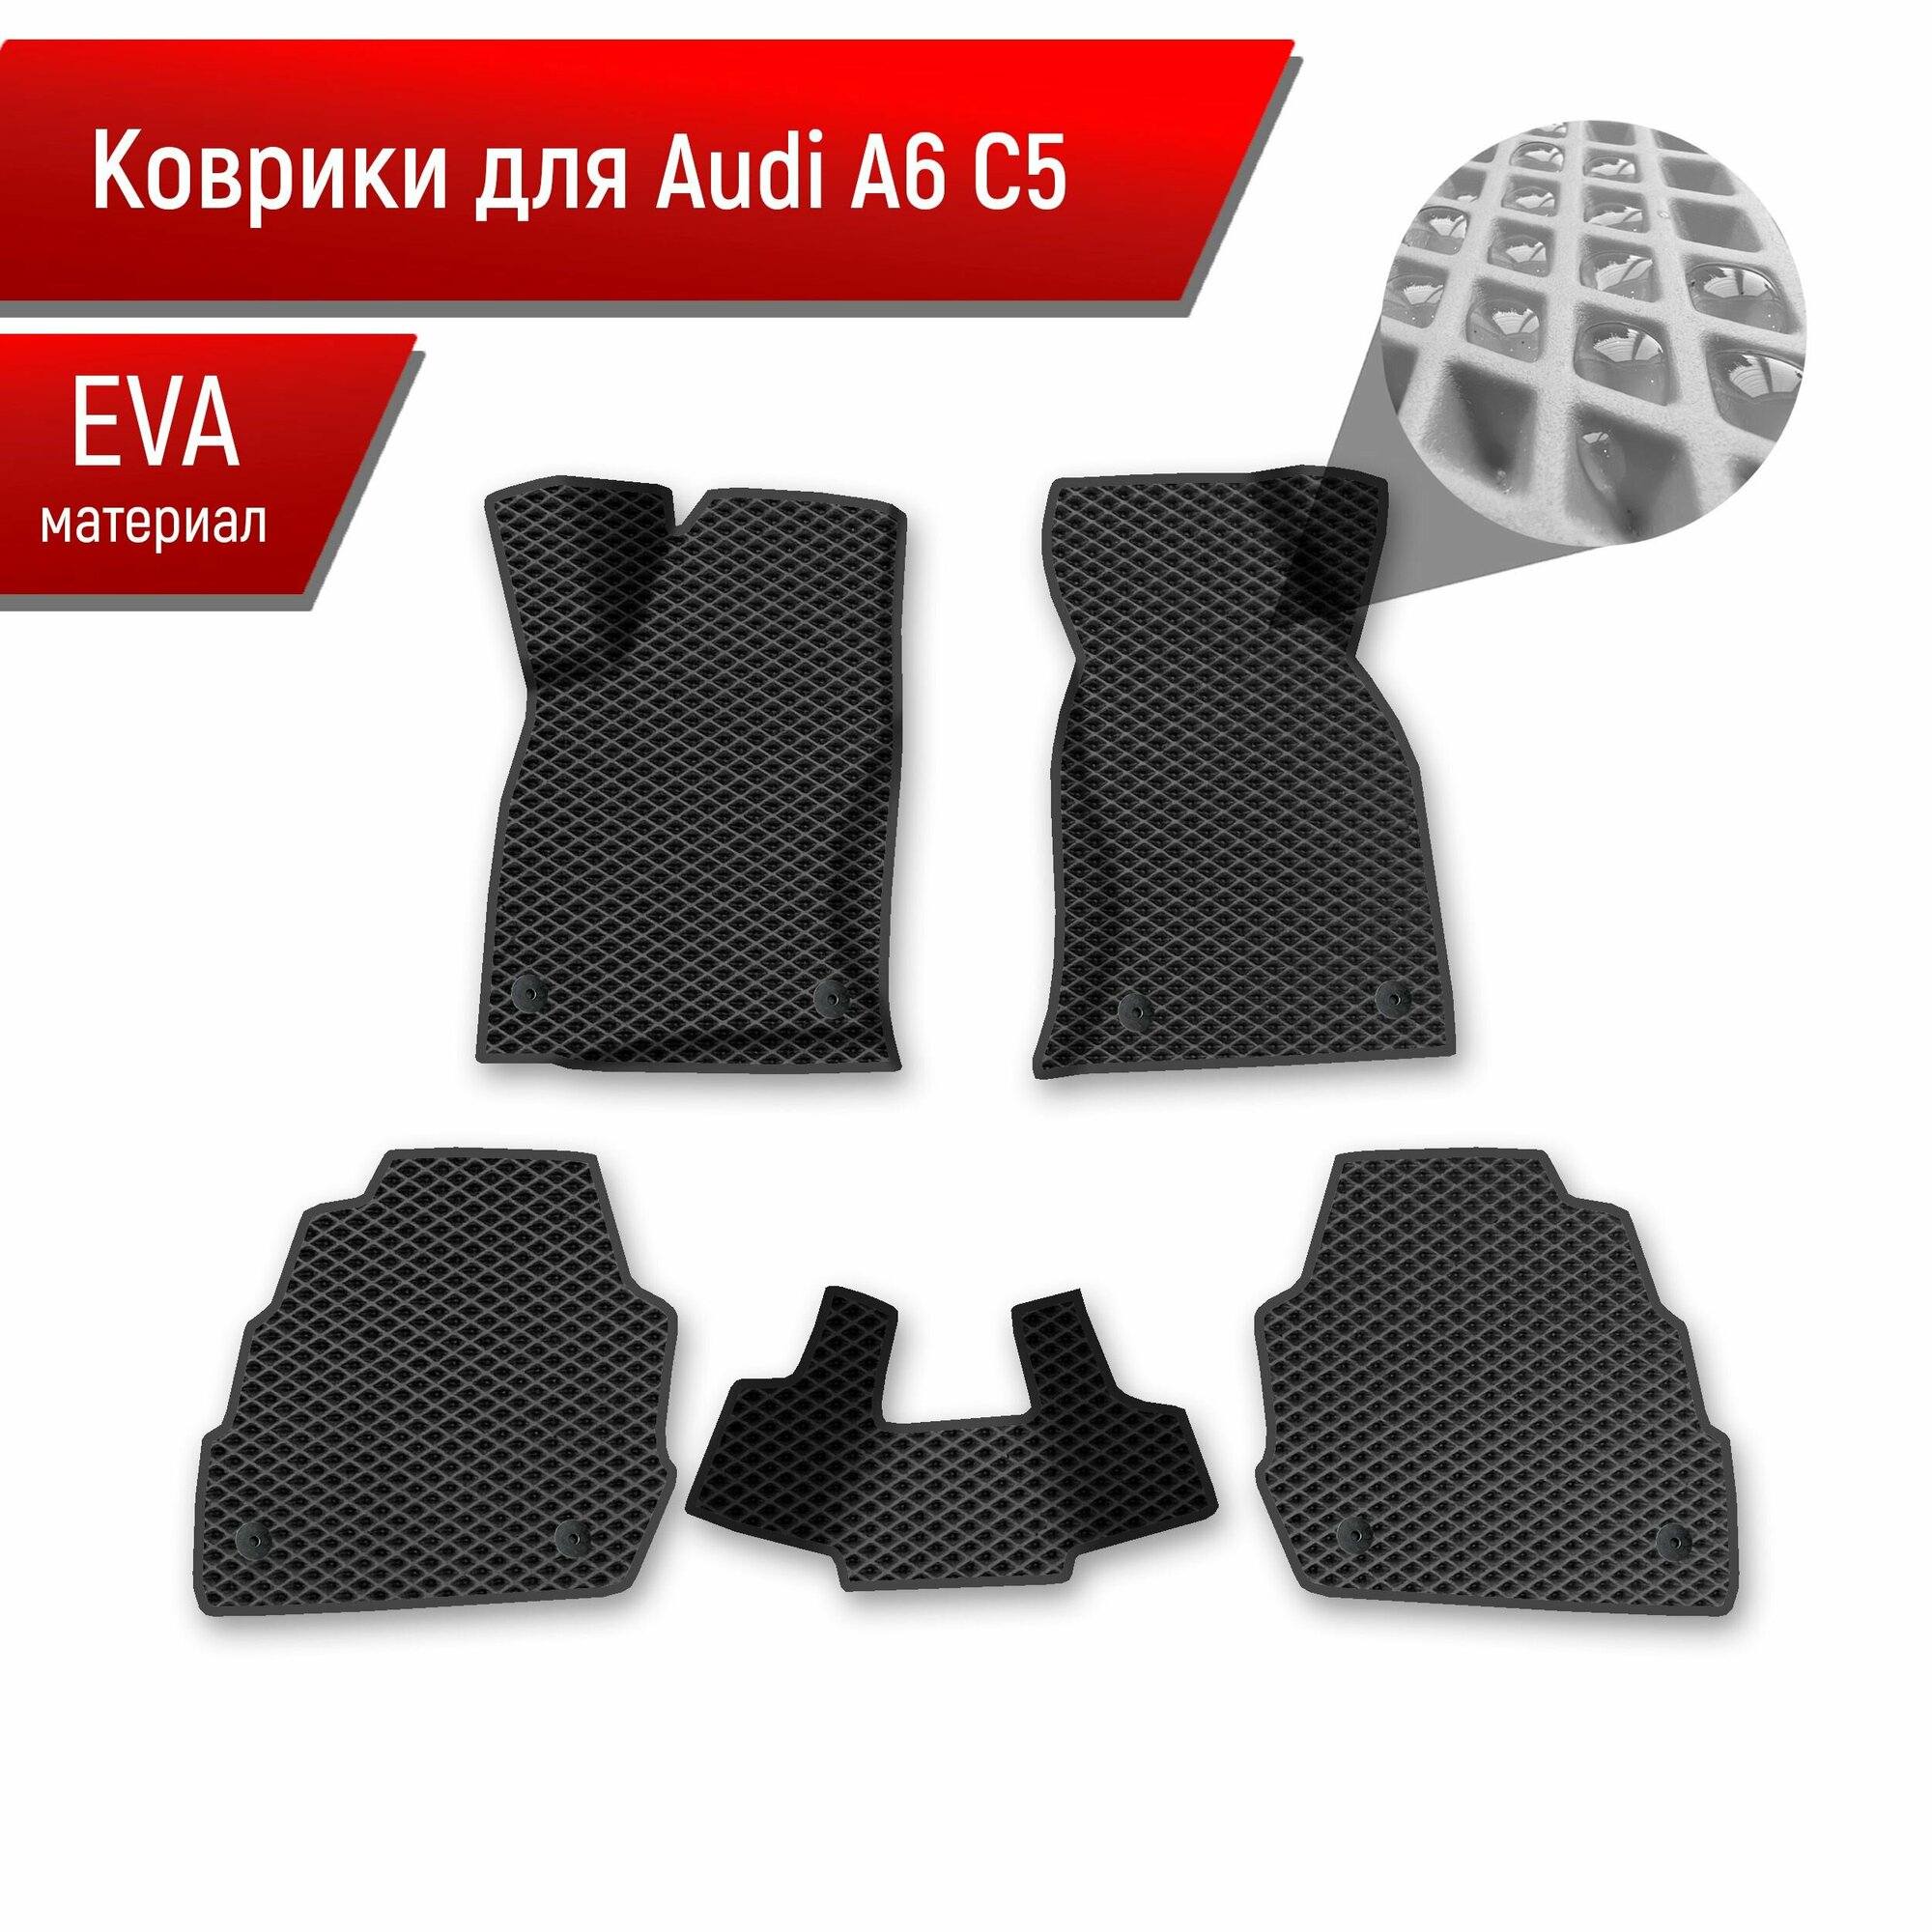 Коврики ЭВА Ромб для авто Audi A6 C5 / Ауди А6 С5 1997-2004 Г. В. Чёрный с Чёрным кантом